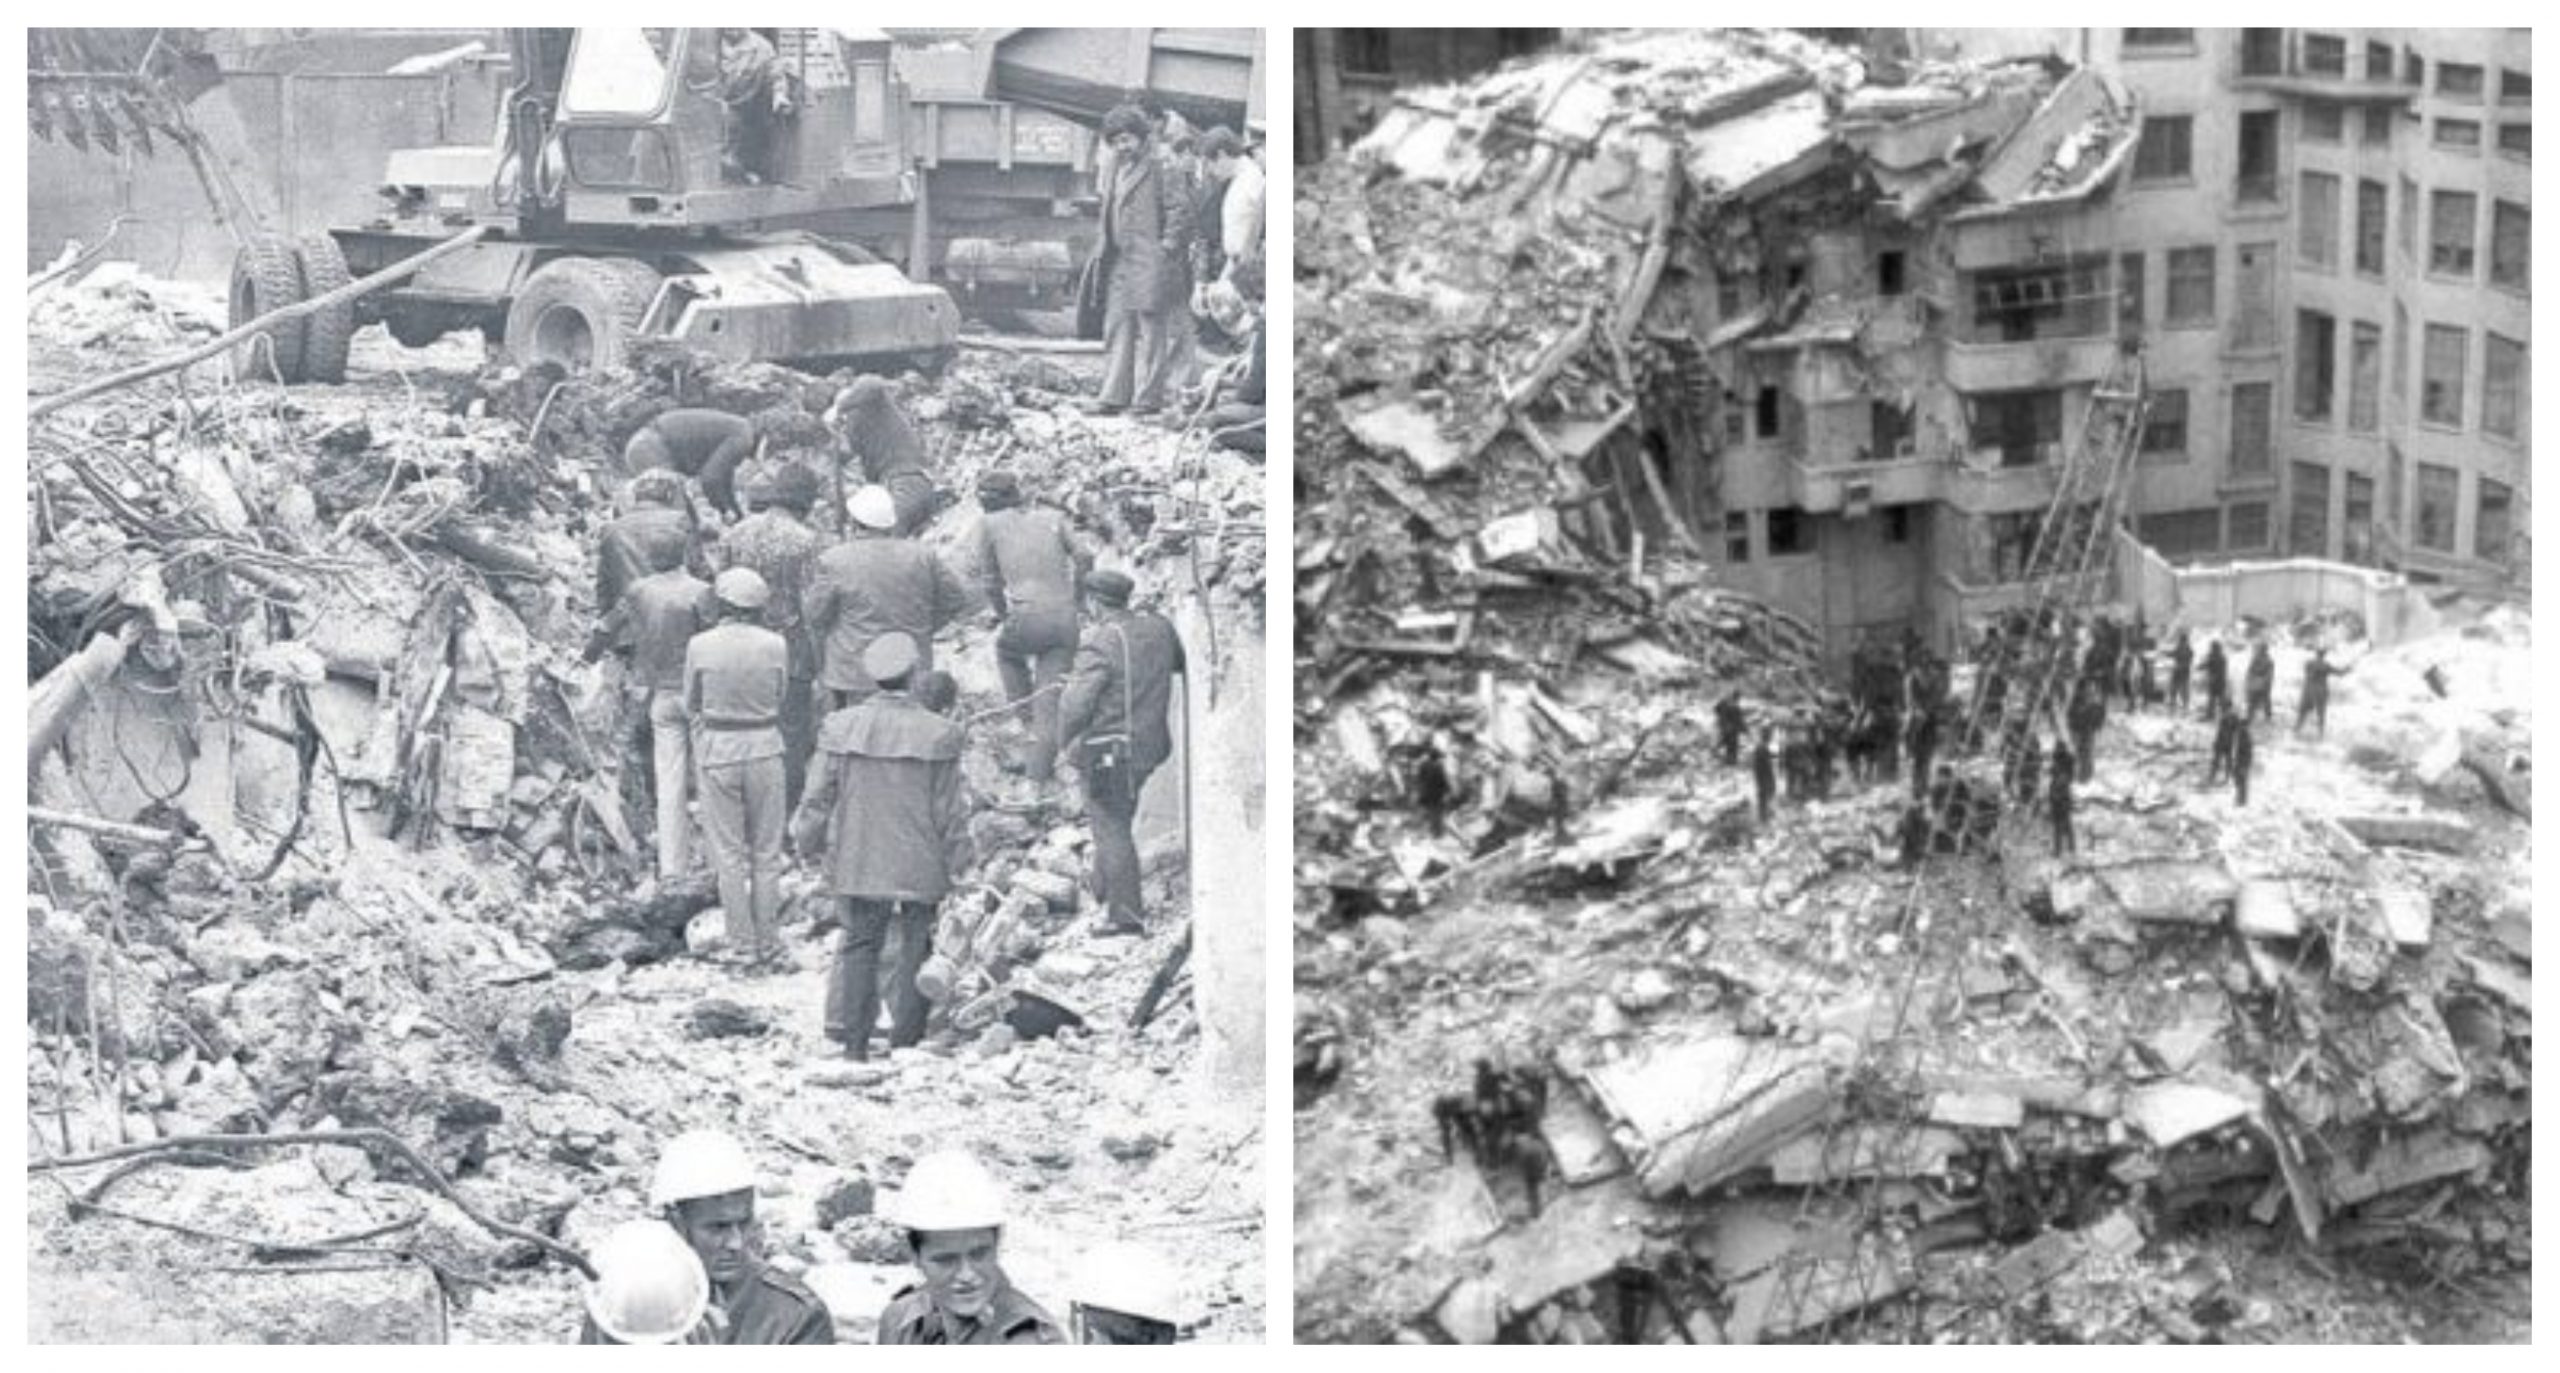 Sâmbătă, la ora 21:22, se împlinesc 46 de ani de la izbucnirea cutremurului din 1977, care a luat mii de vieți. INCDFP atrage atenția că un astfel de eveniment va mai avea loc în Vrancea și le recomandă oamenilor să fie informați.